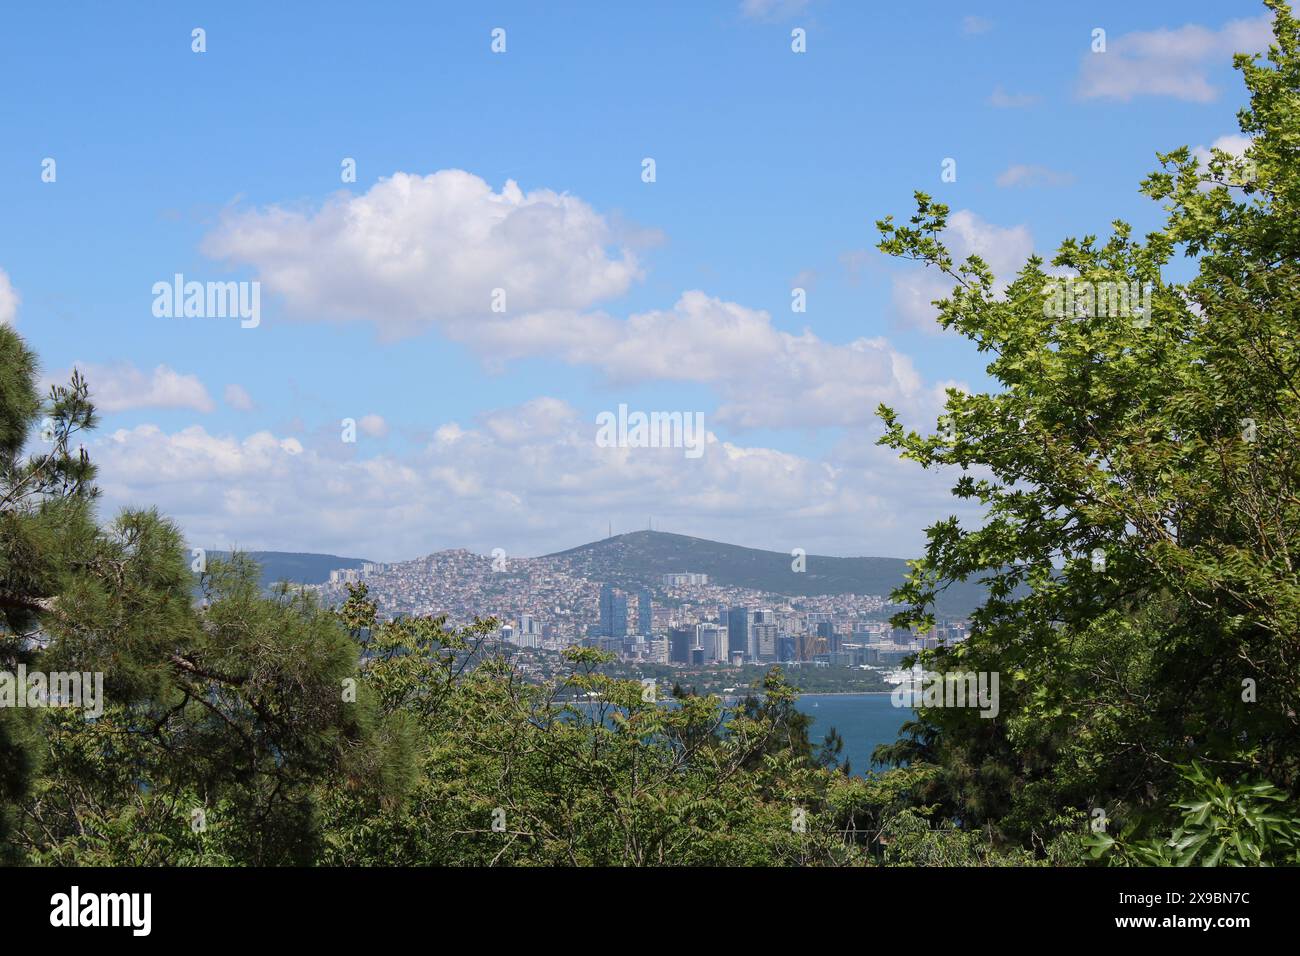 Der asiatische Teil Istanbuls liegt weit entfernt auf dem Festland. Blick auf die Landschaft durch grüne Äste. Reisen Sie im Sommer in die Türkei Stockfoto